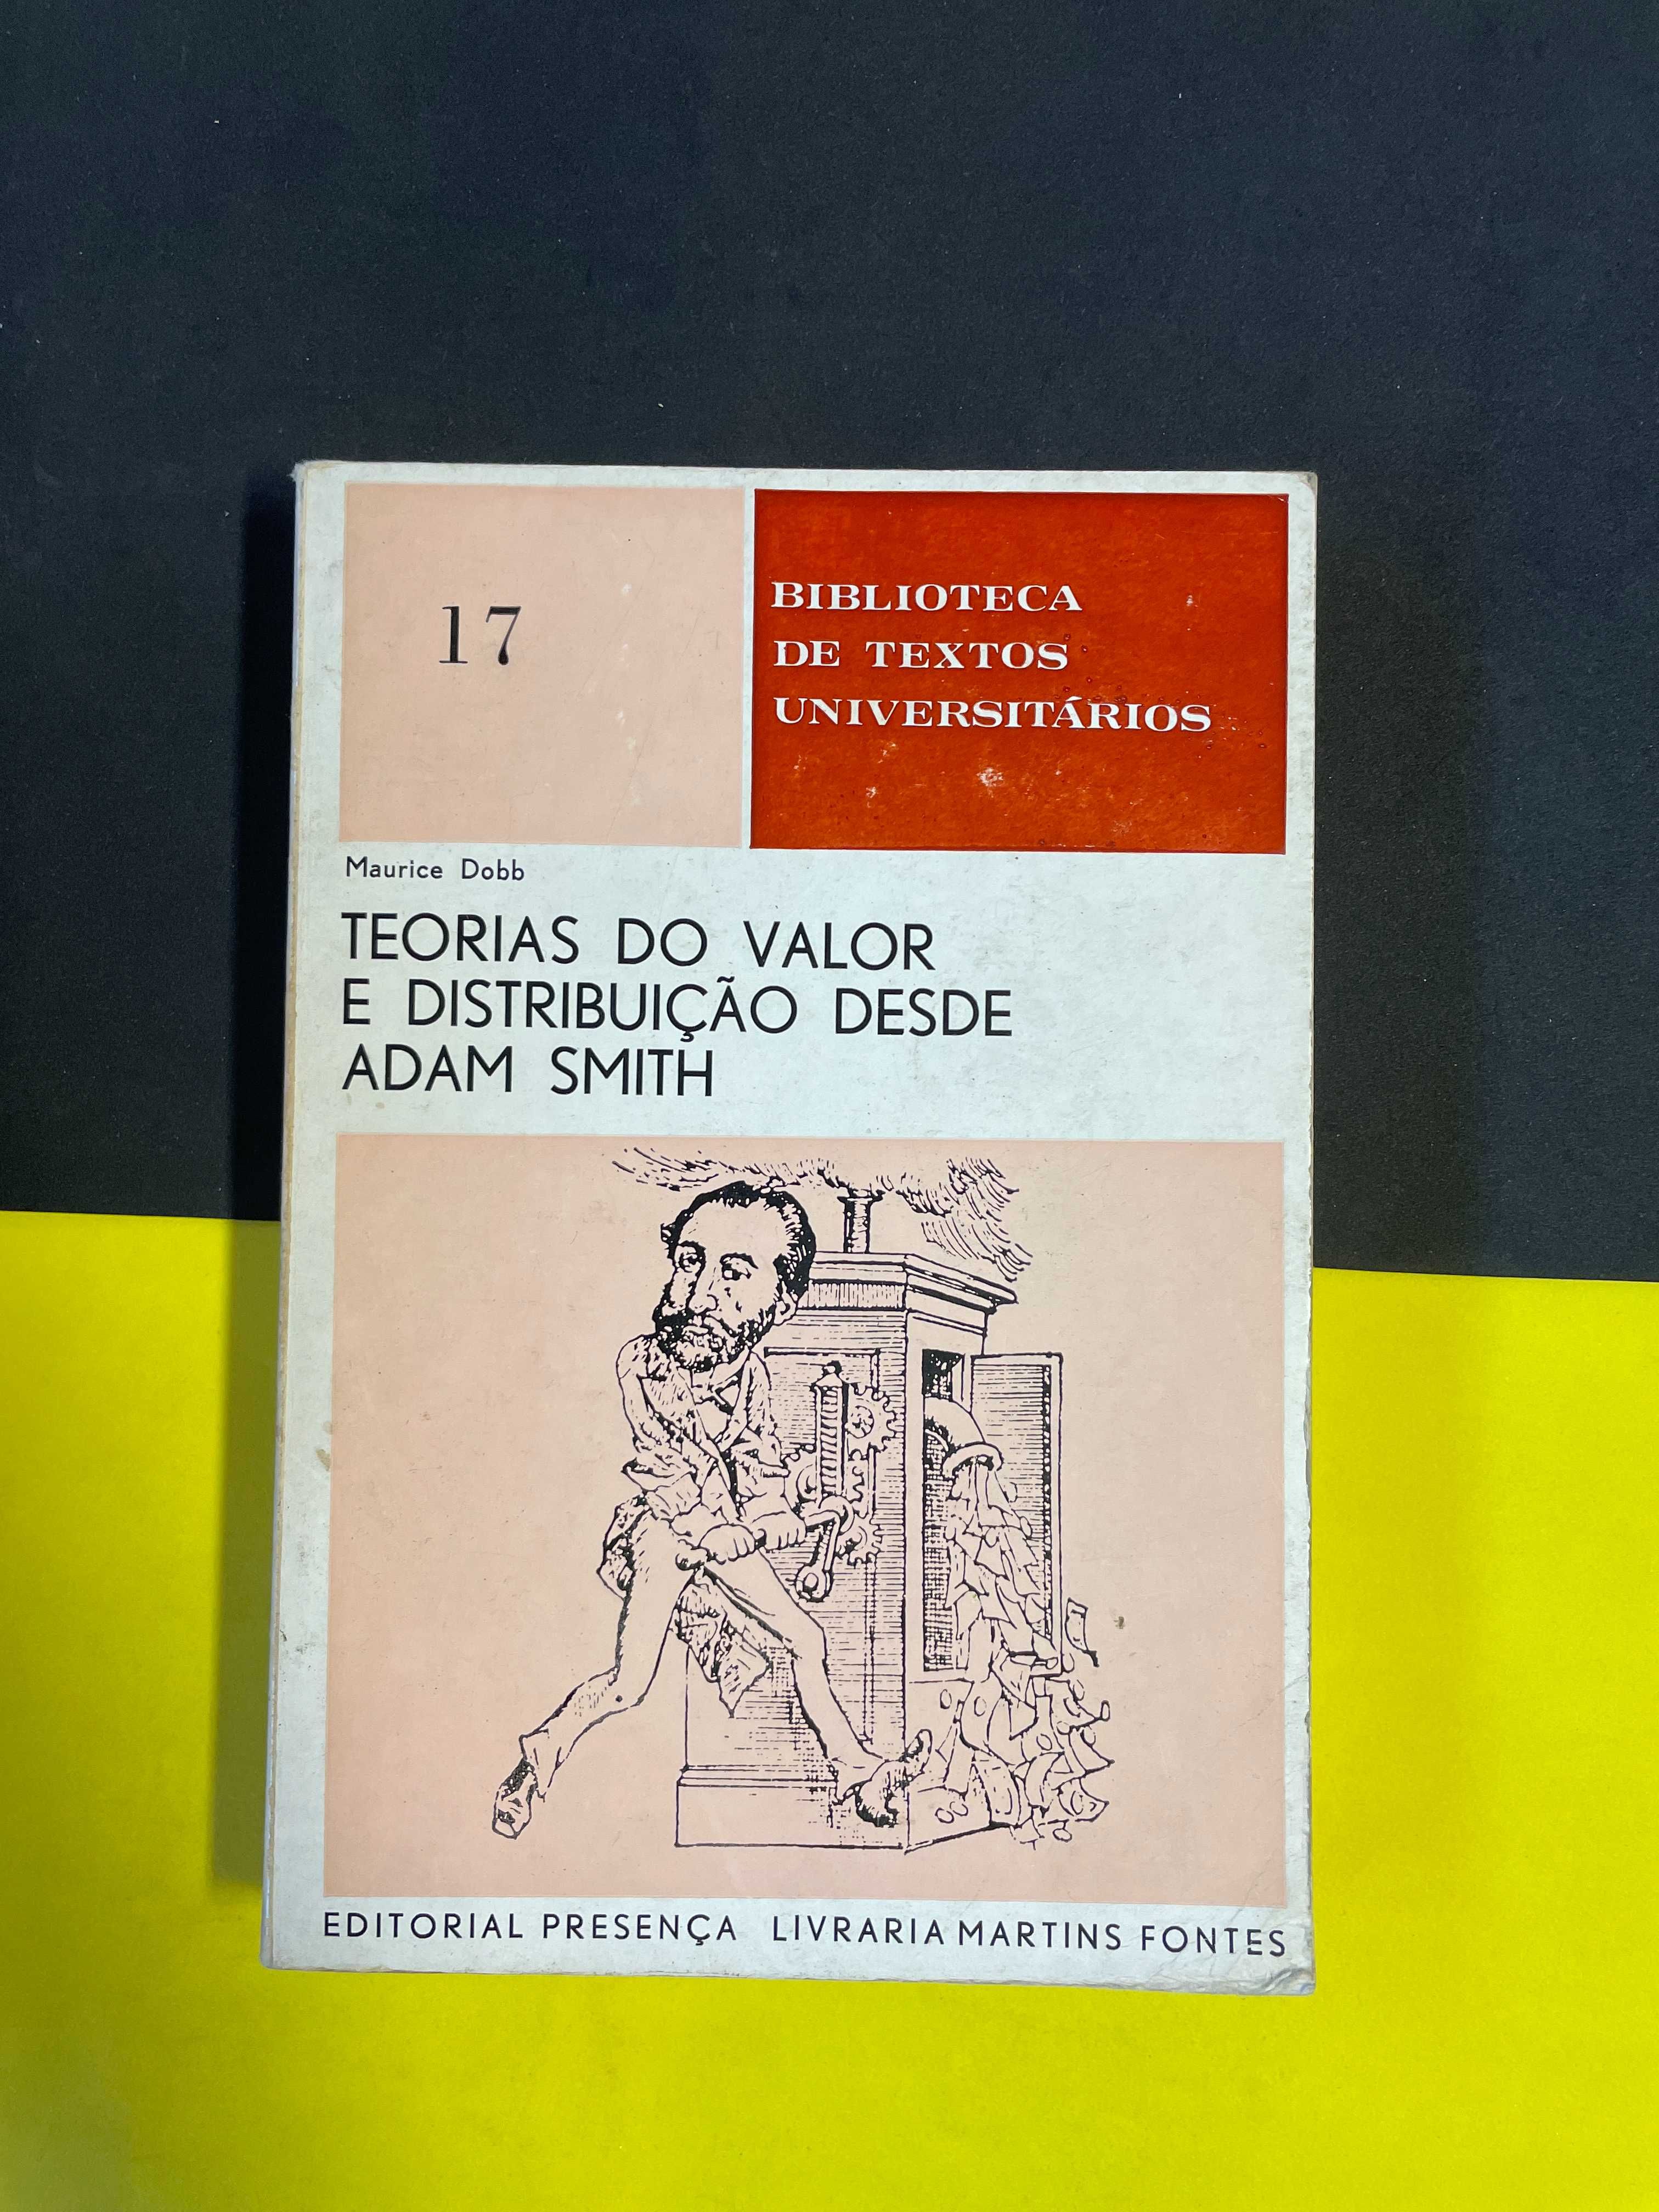 Maurice Dobb - Teorias do Valor e distribuição desde Adam Smith